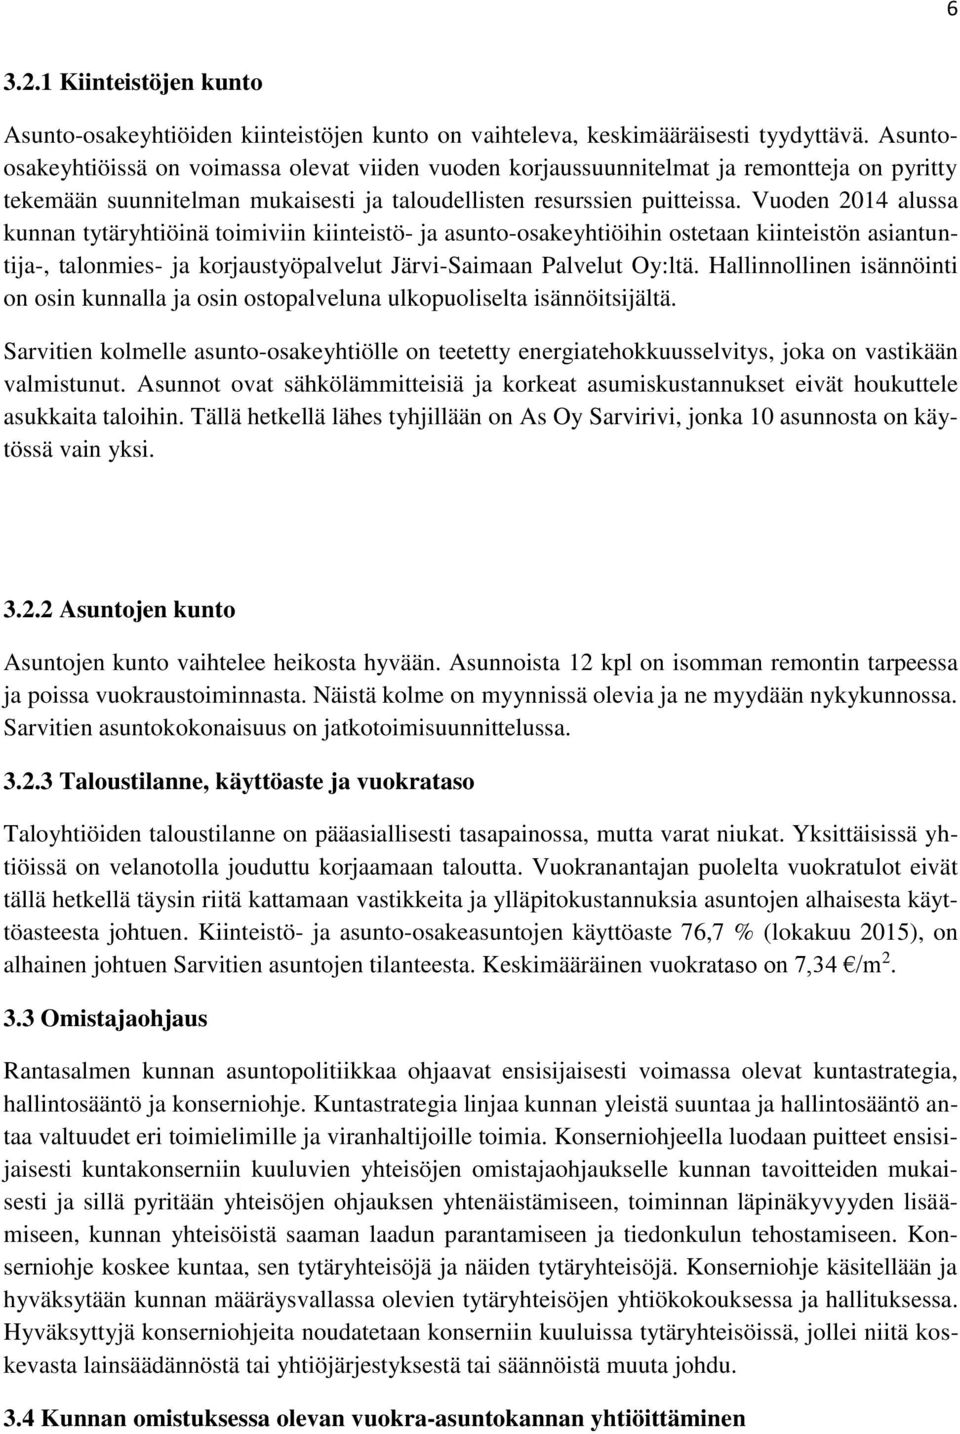 Vuoden 2014 alussa kunnan tytäryhtiöinä toimiviin kiinteistö- ja asunto-osakeyhtiöihin ostetaan kiinteistön asiantuntija-, talonmies- ja korjaustyöpalvelut Järvi-Saimaan Palvelut Oy:ltä.